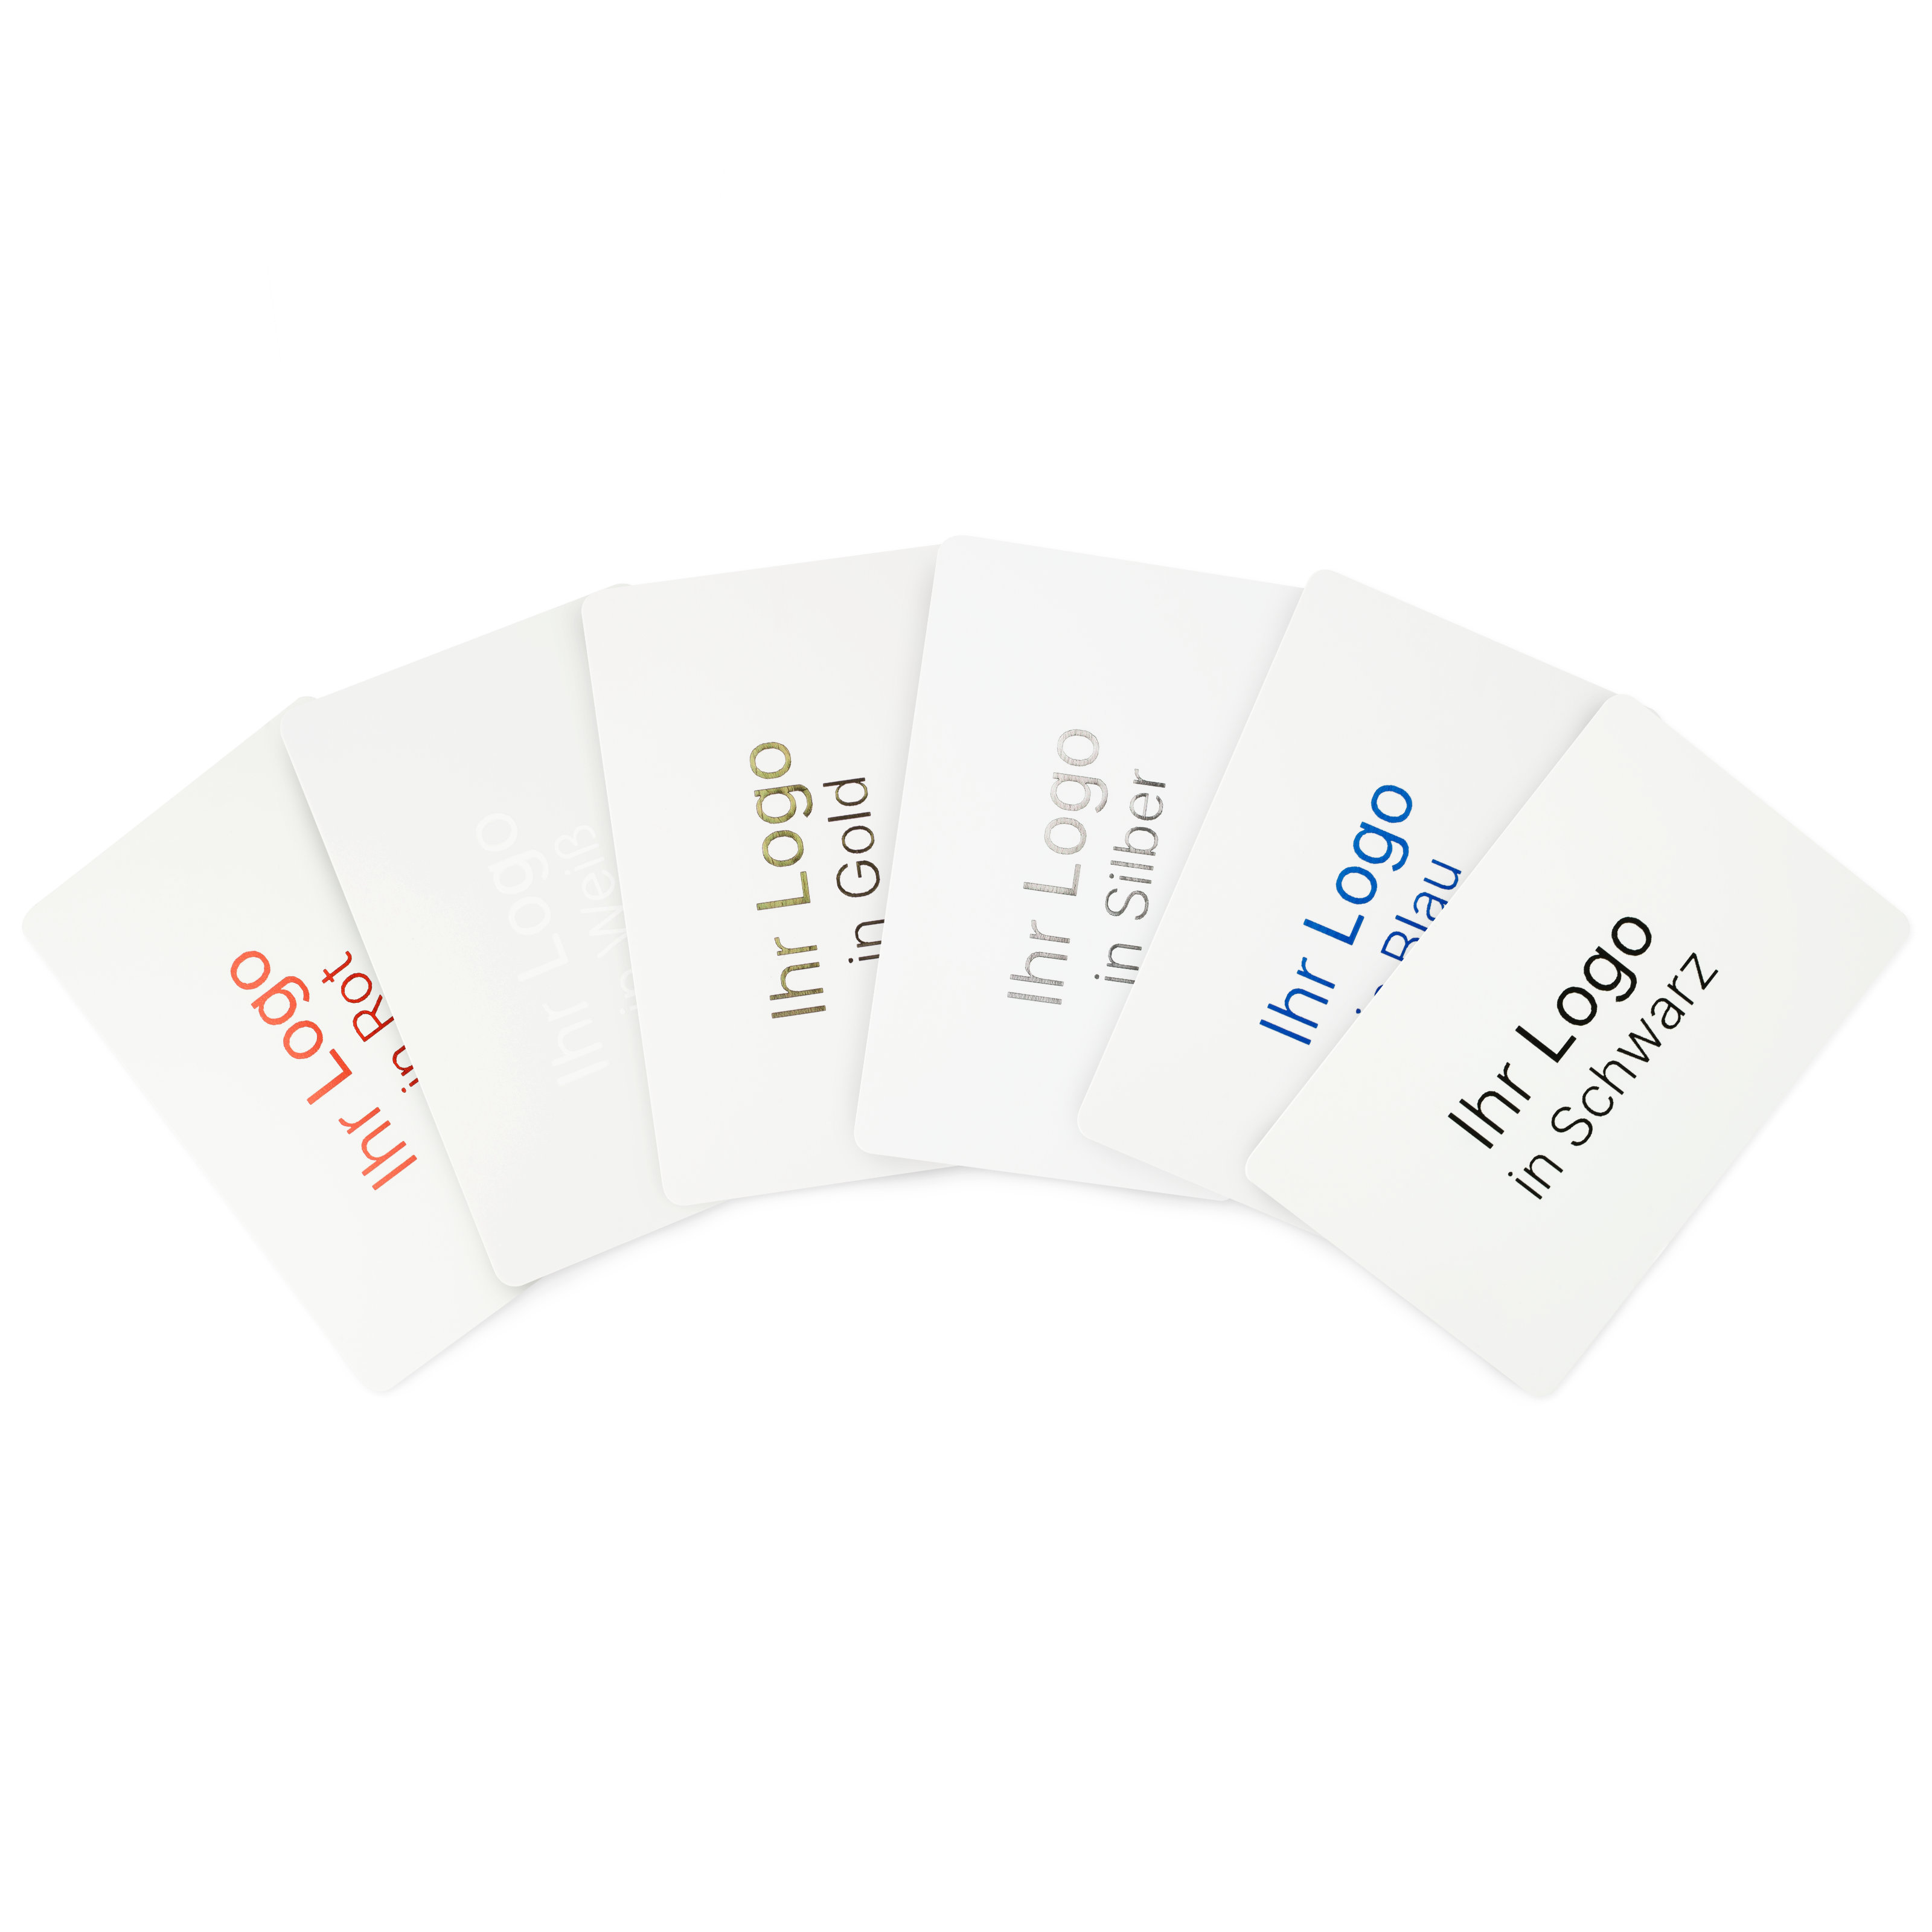 Gruppenbild von weißen NFC Karten mit den verschiedenen Druckfarben